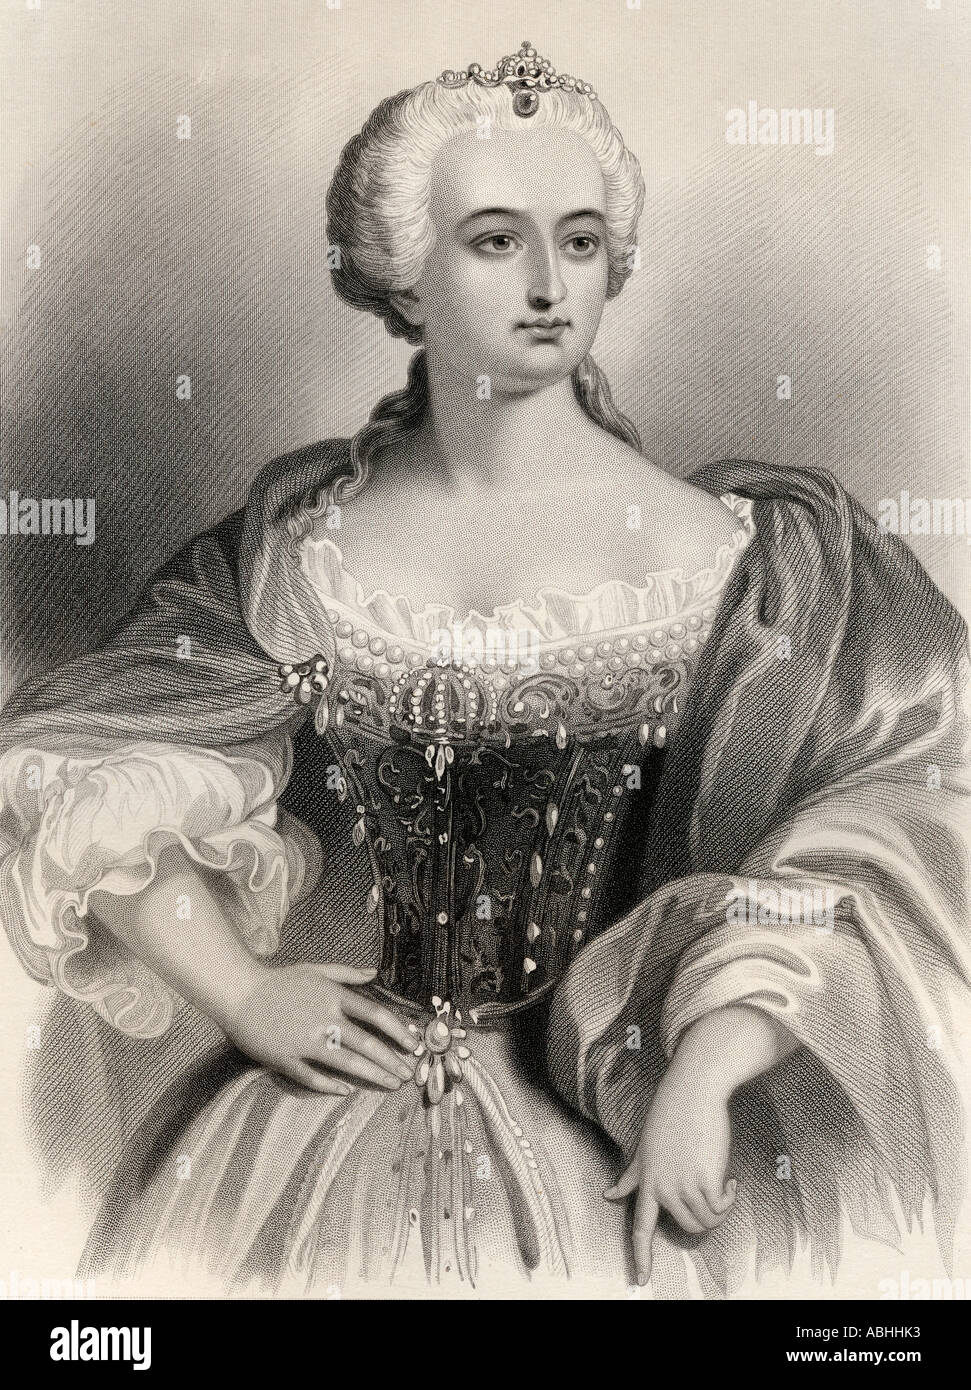 Maria Theresa Walburga Amalia Christina, Erzduchess von Österreich und Königin von Ungarn und Böhmen, 1717 - 1780. Stockfoto